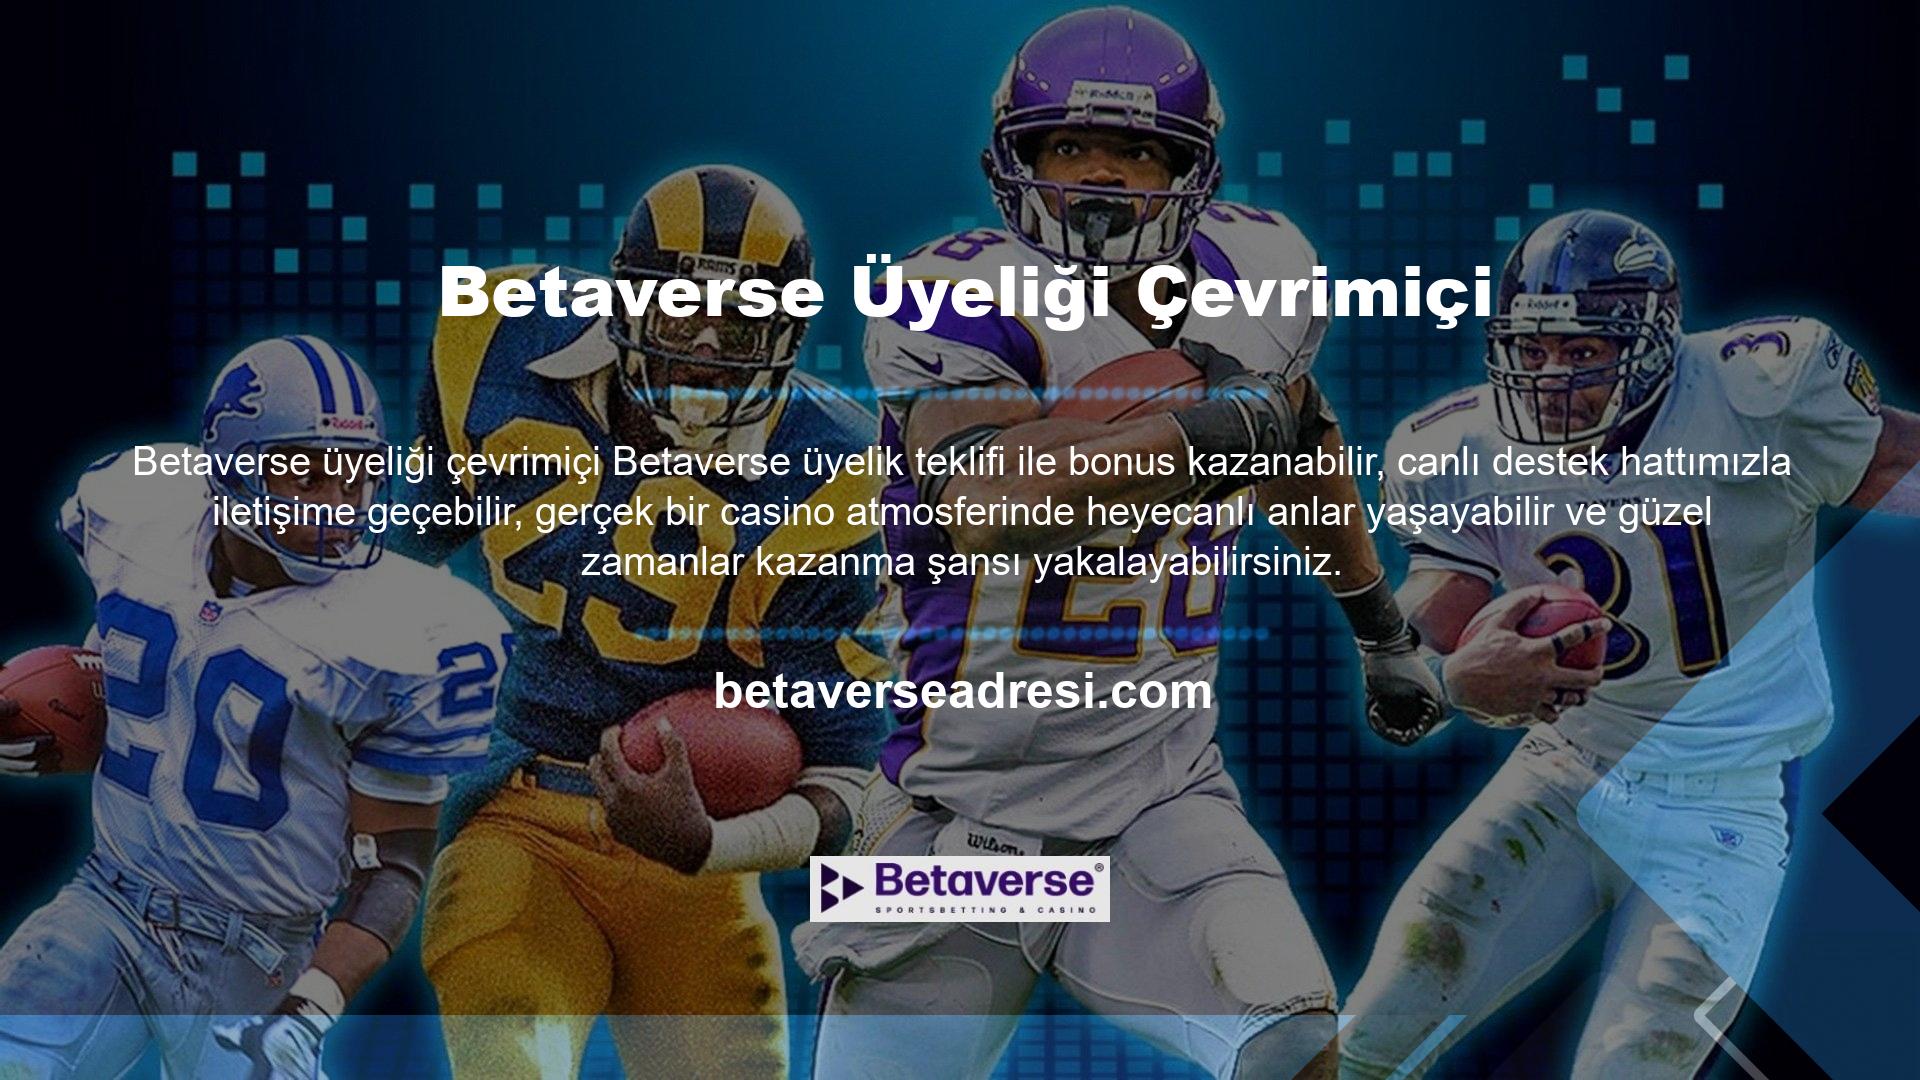 Betaverse web sitesini veya Türkiye pazarındaki en güvenilir web sitelerinden herhangi birini kullanmak istiyorsanız üyelik prosedürlerini takip etmelisiniz